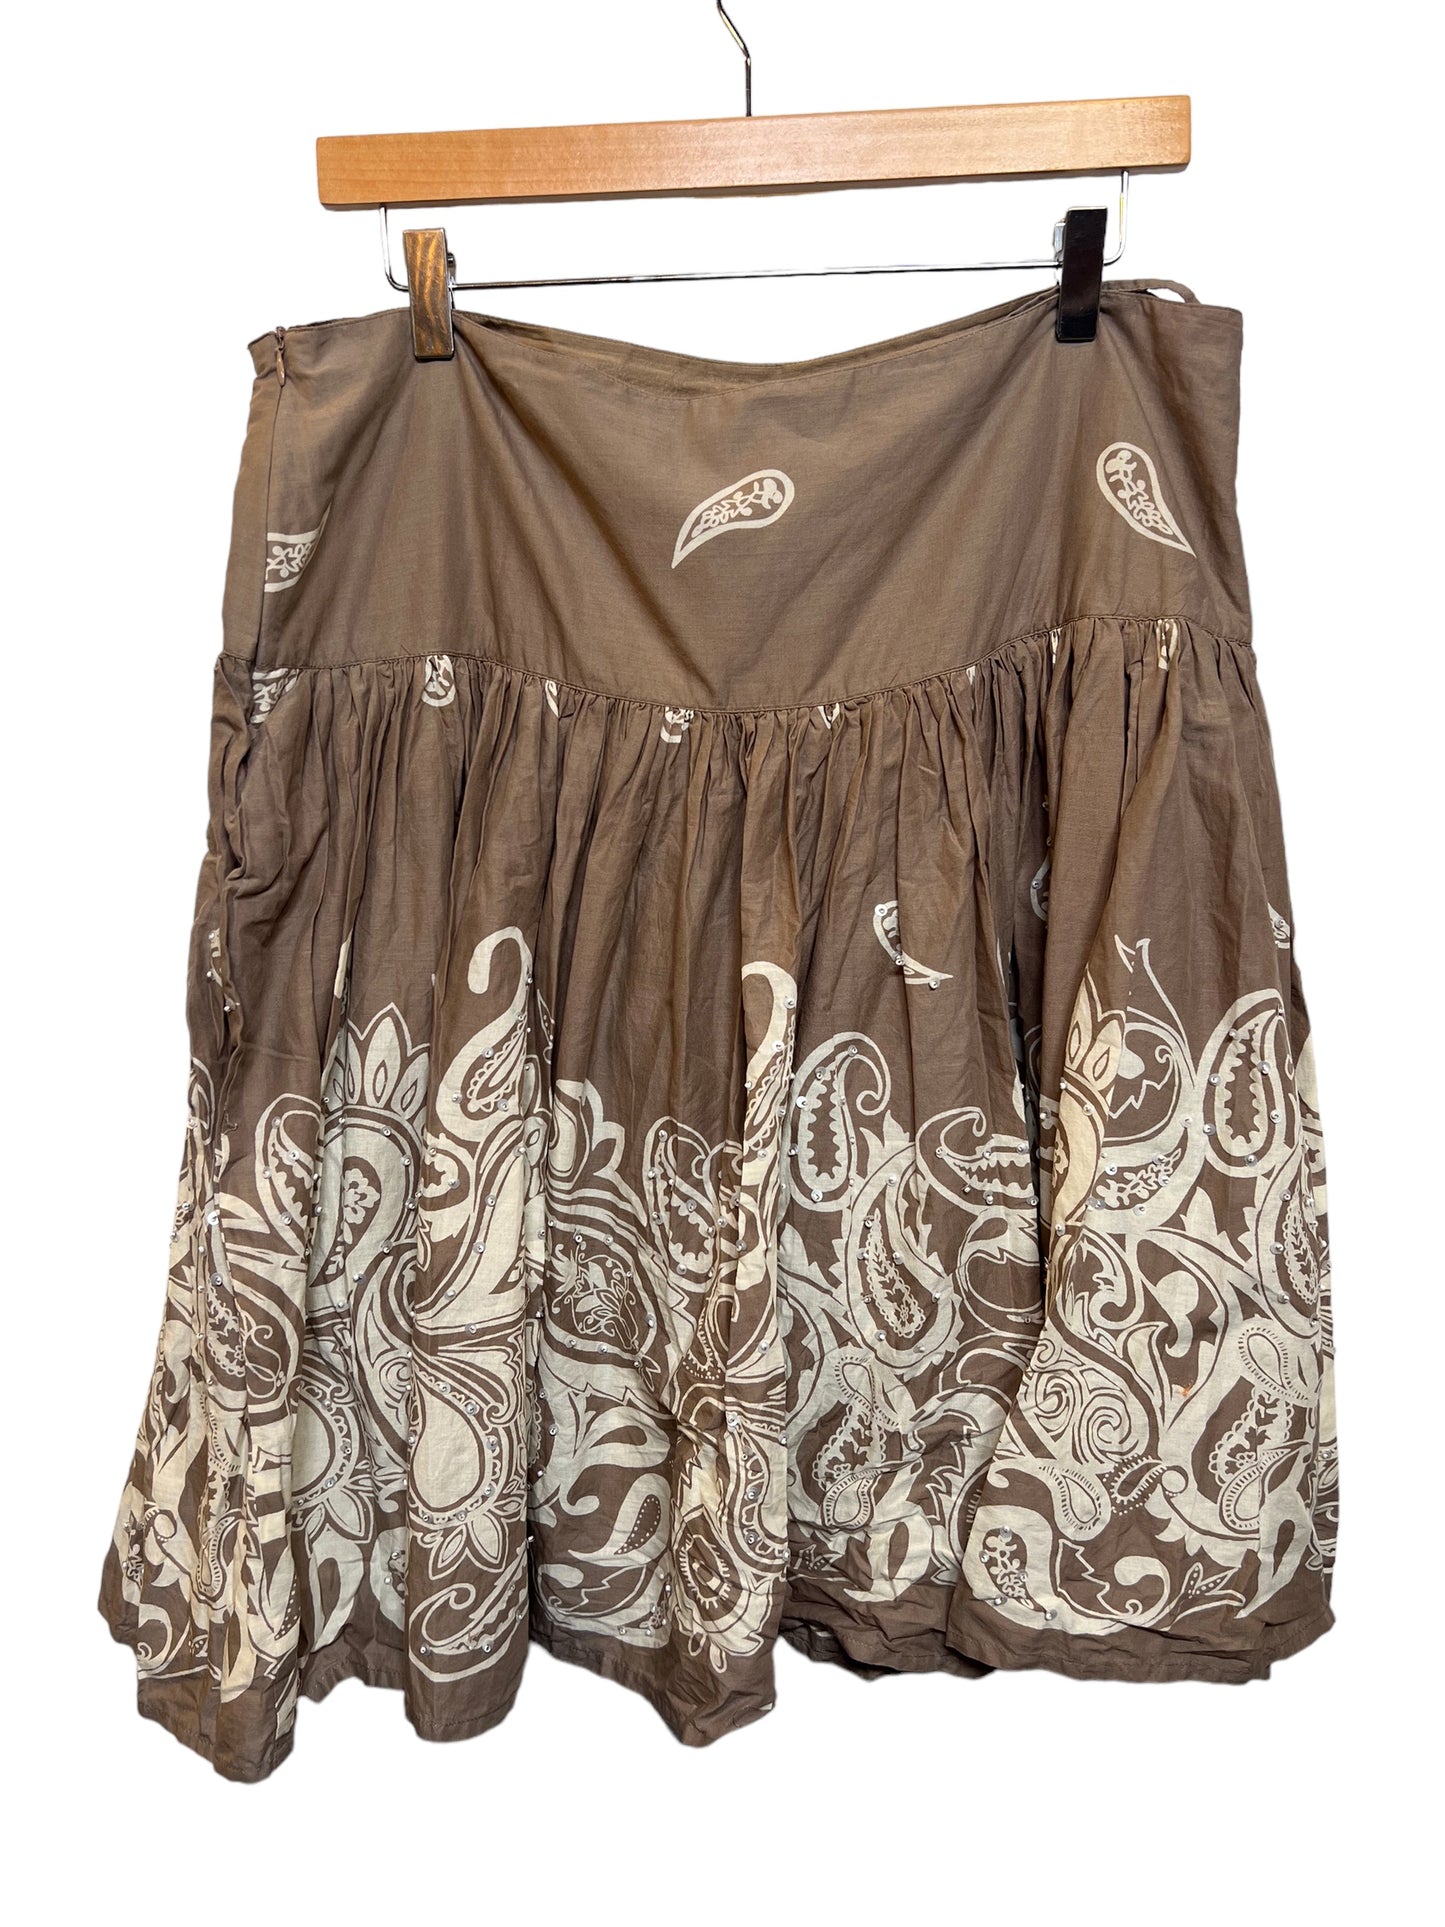 Khaki Pleated Skirt (Size XL)